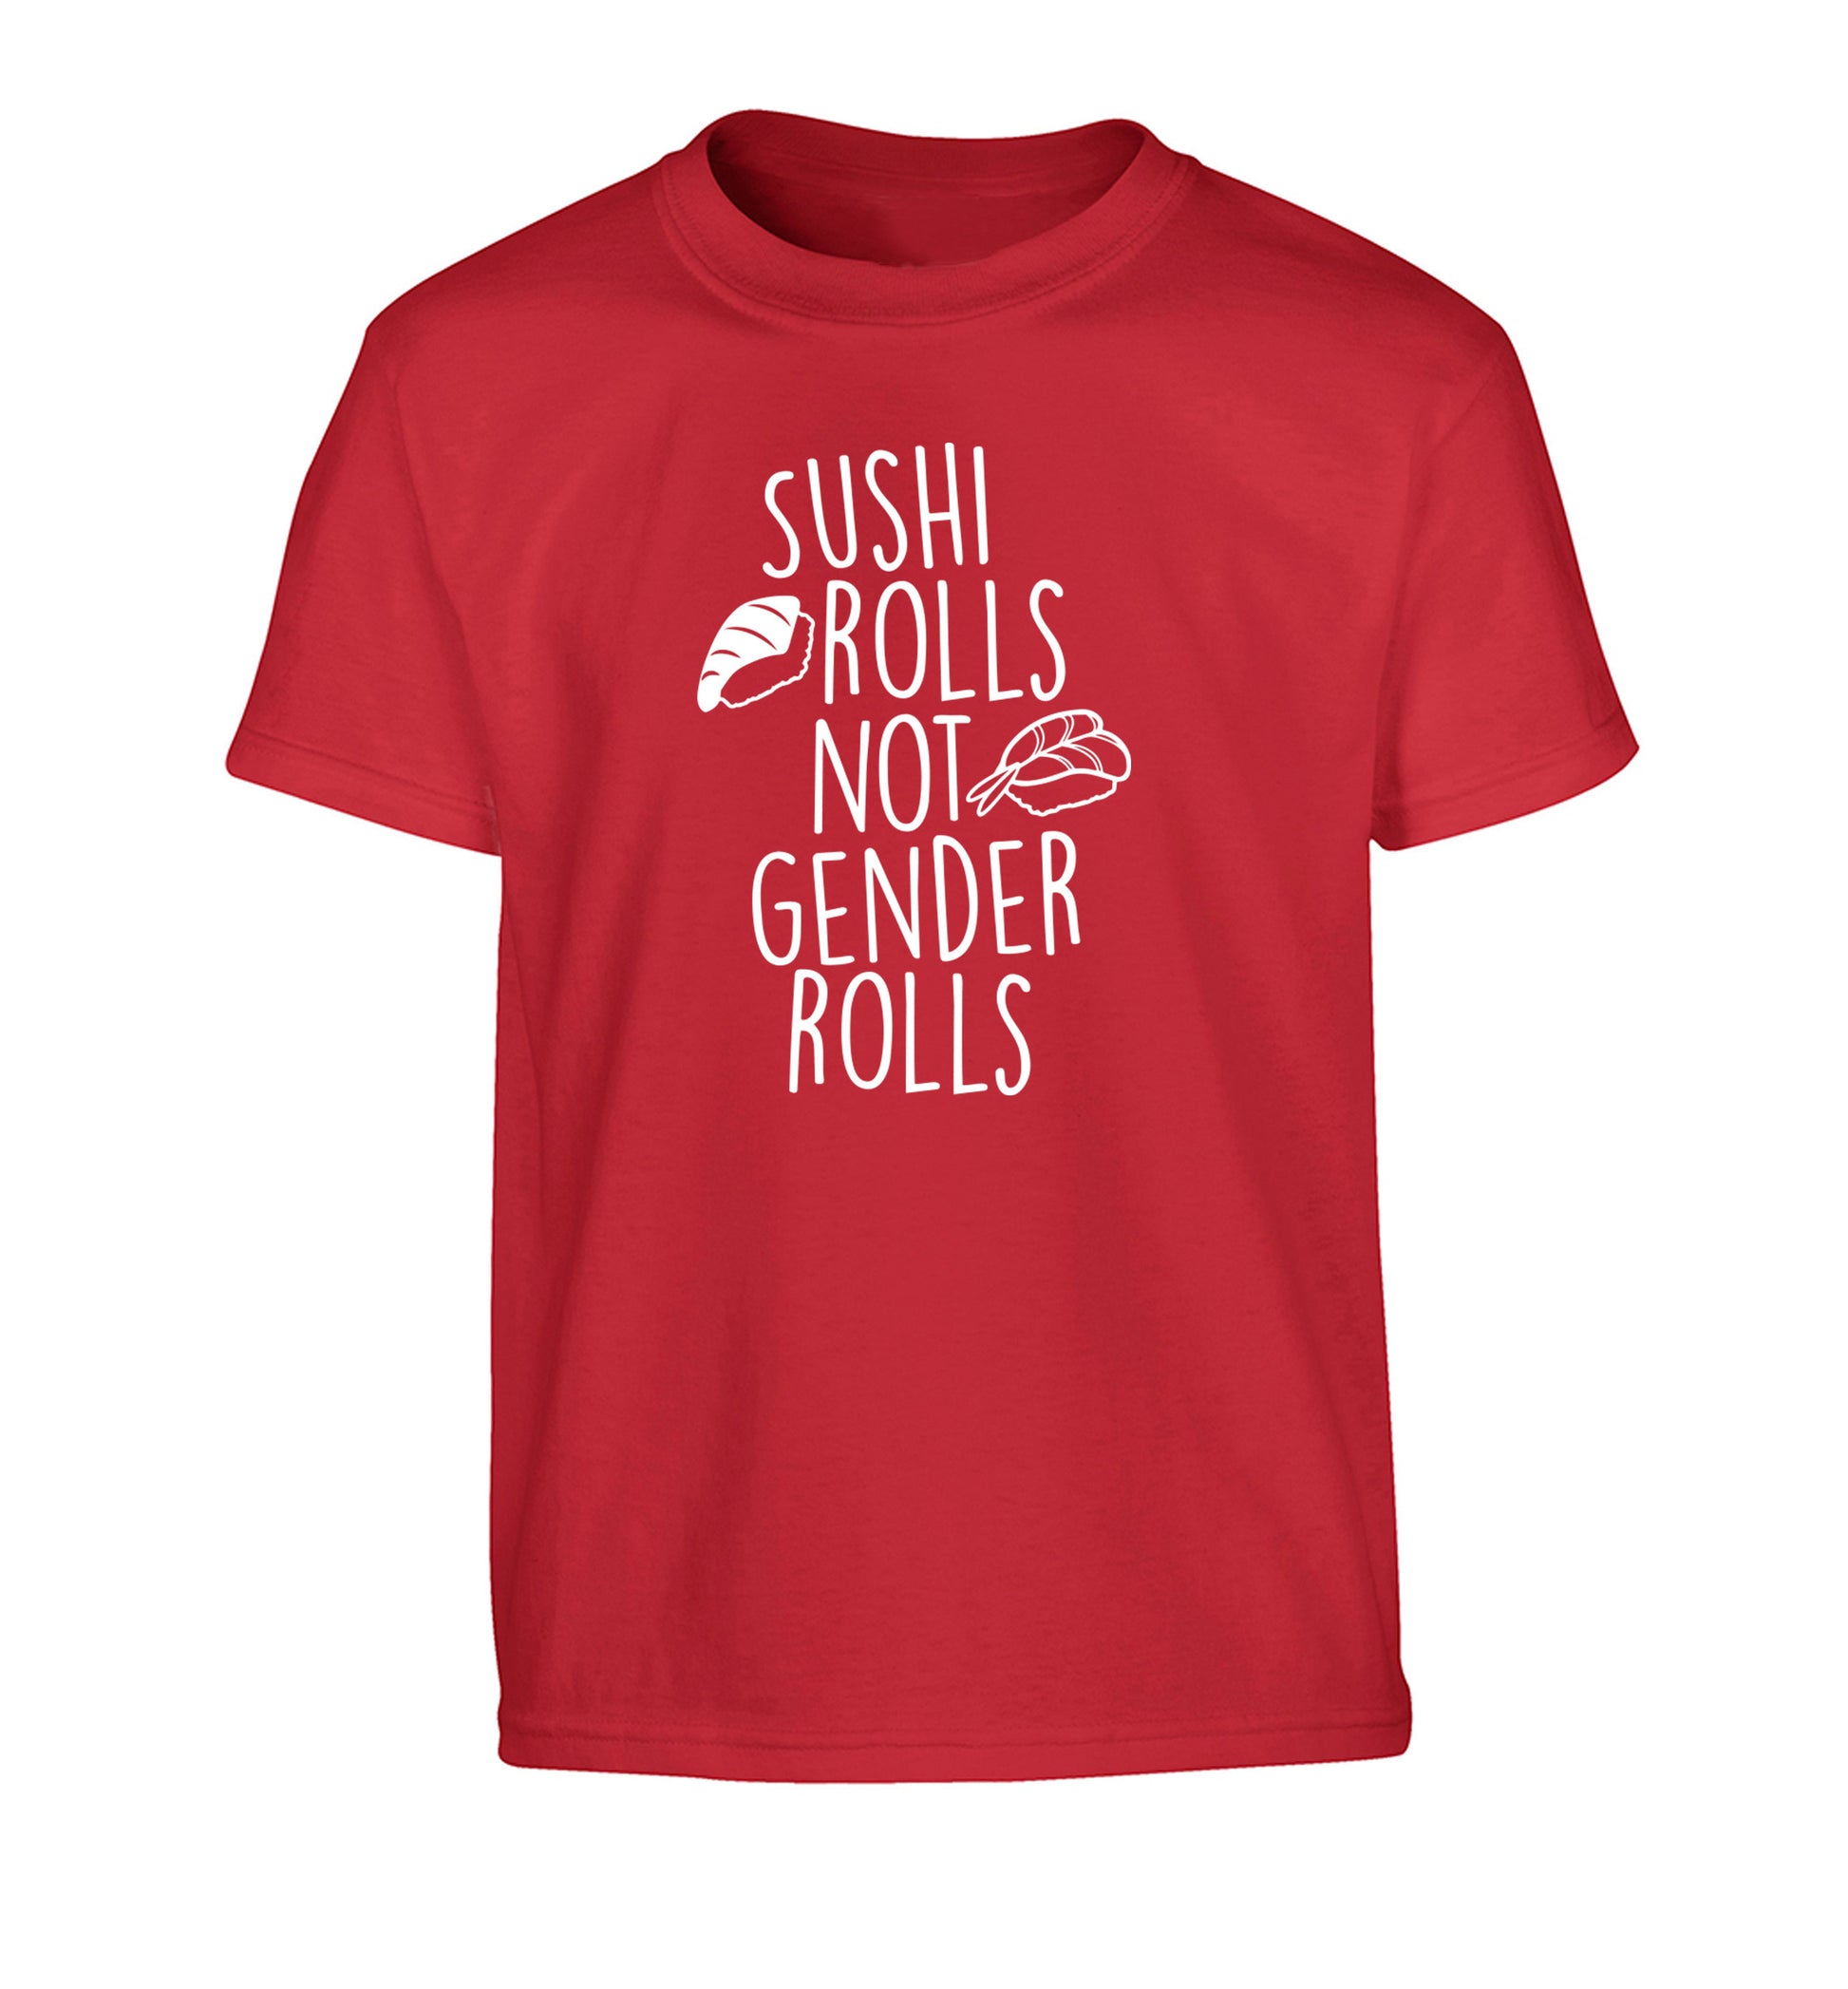 Sushi rolls not gender rolls Children's red Tshirt 12-14 Years